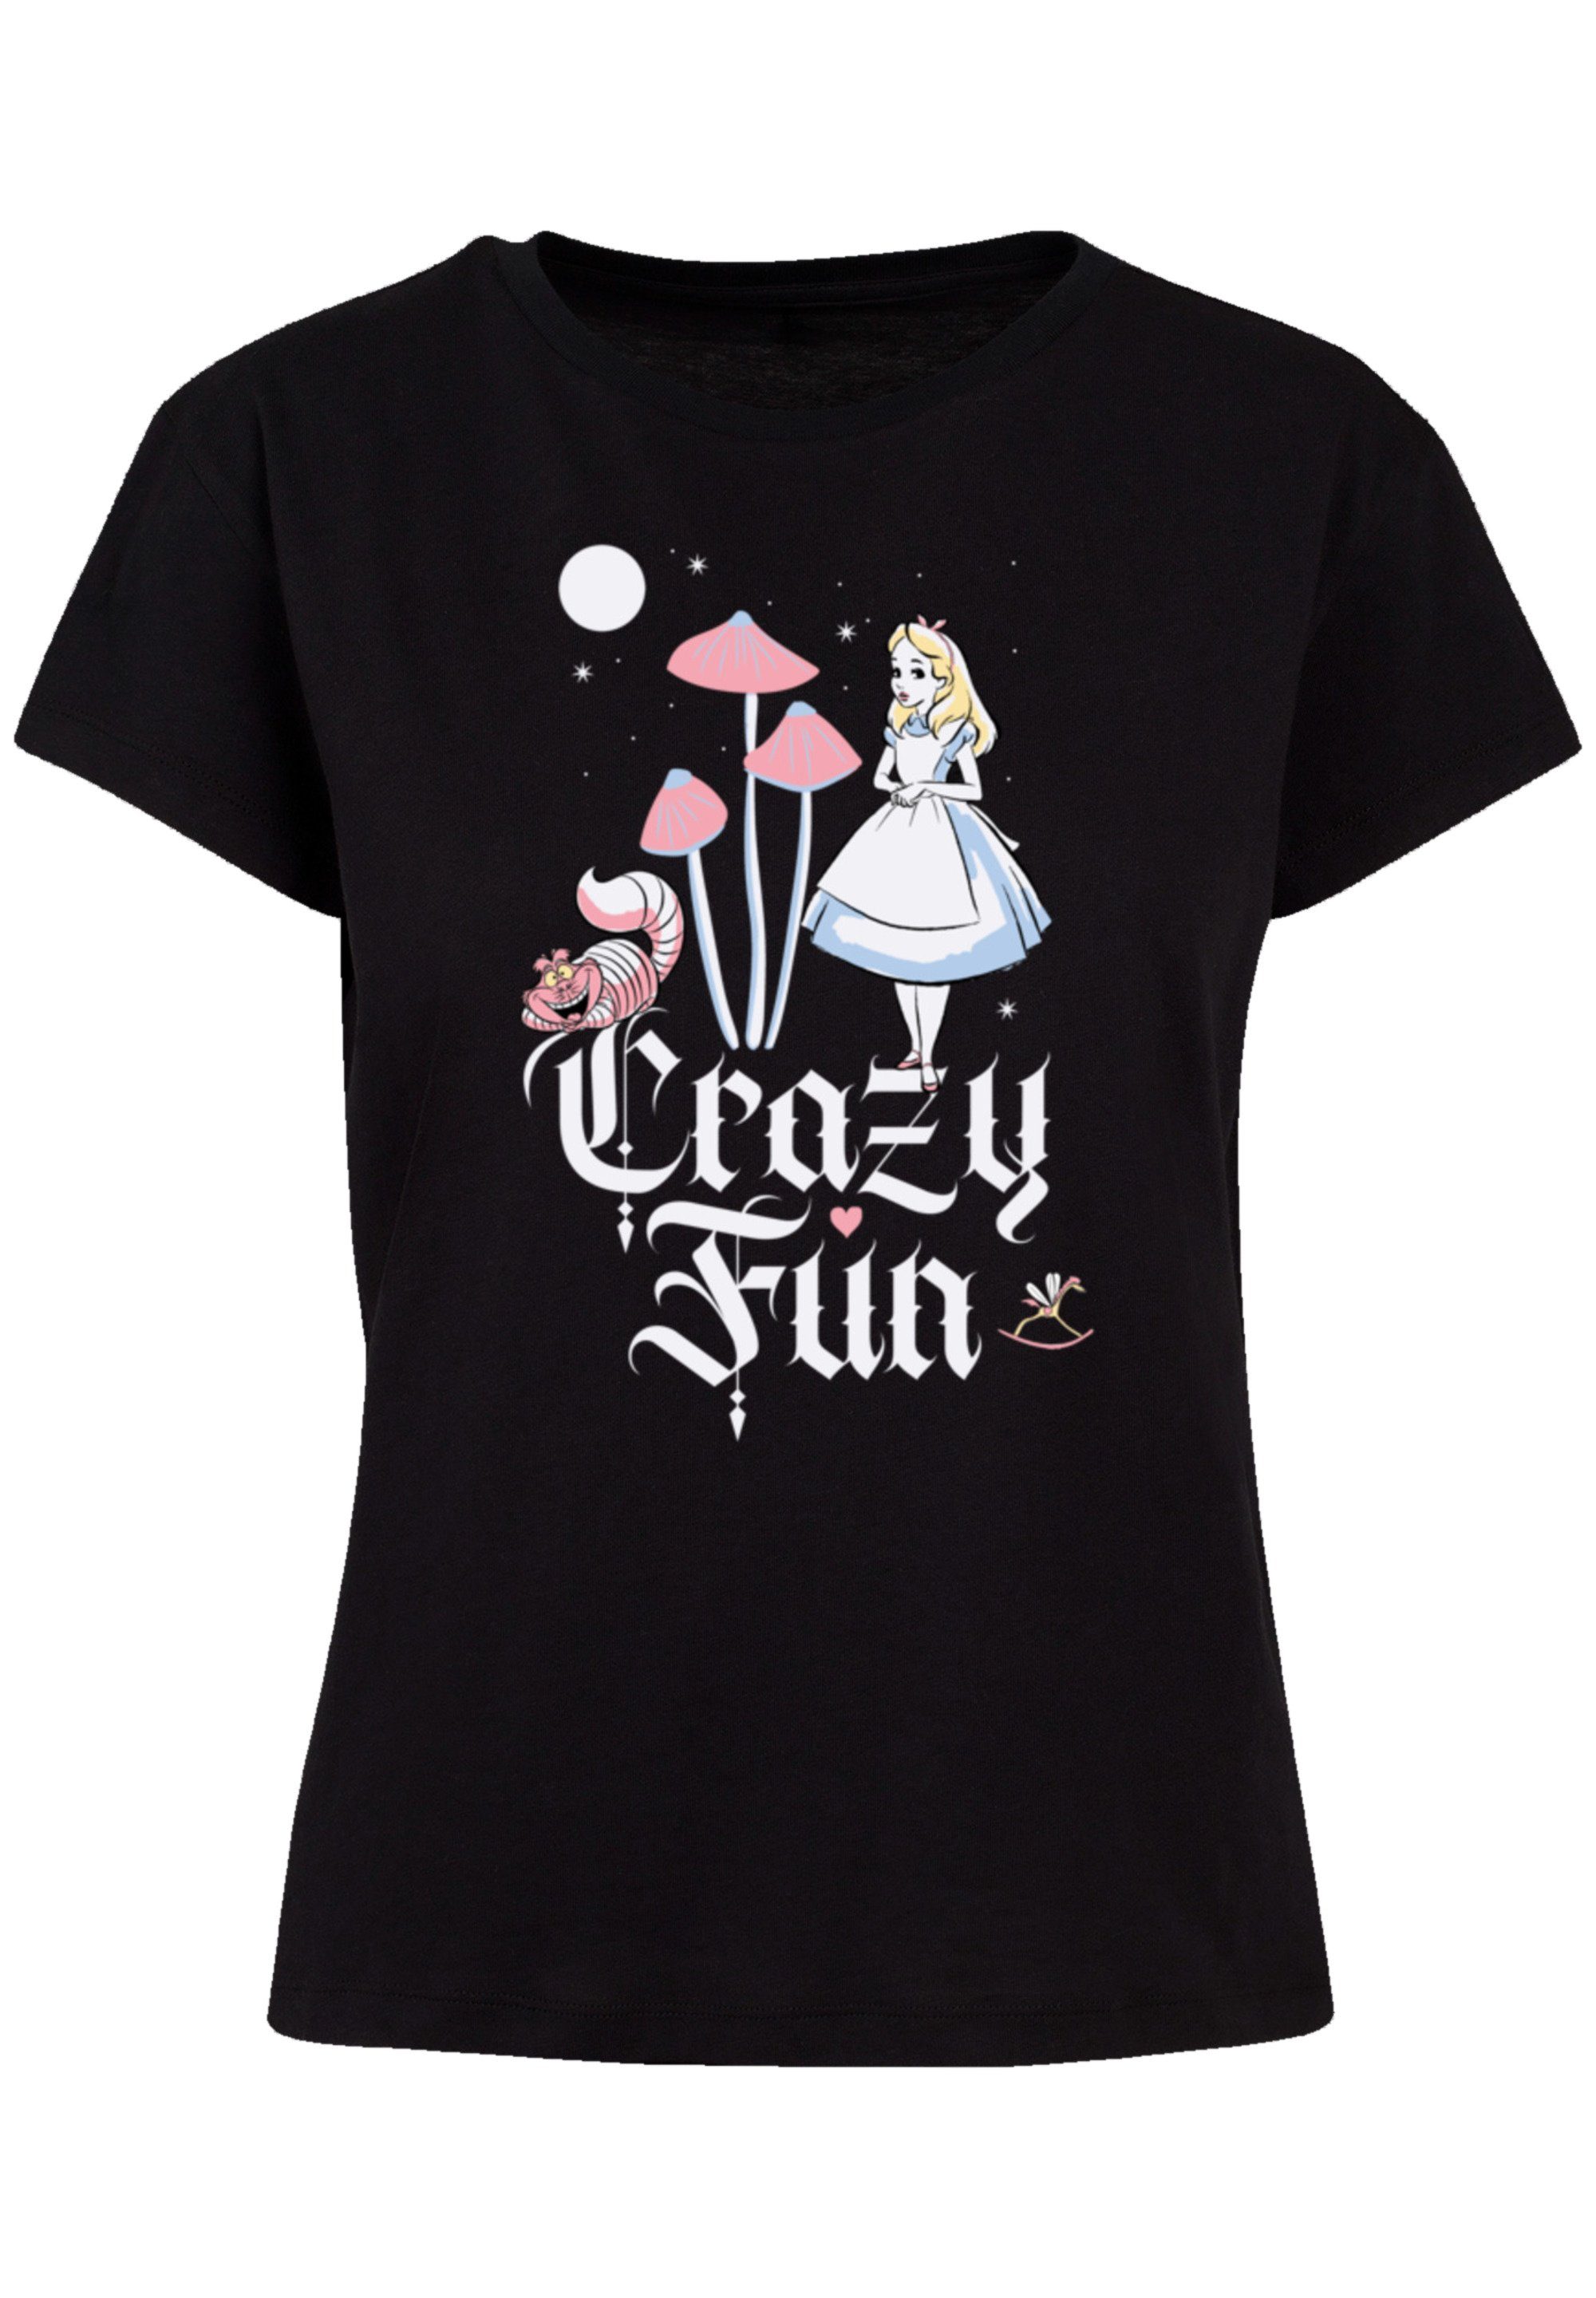 Crazy Fun T-Shirt und hochwertige Disney Alice Perfekte Qualität, Passform im F4NT4STIC Verarbeitung Premium Wunderland